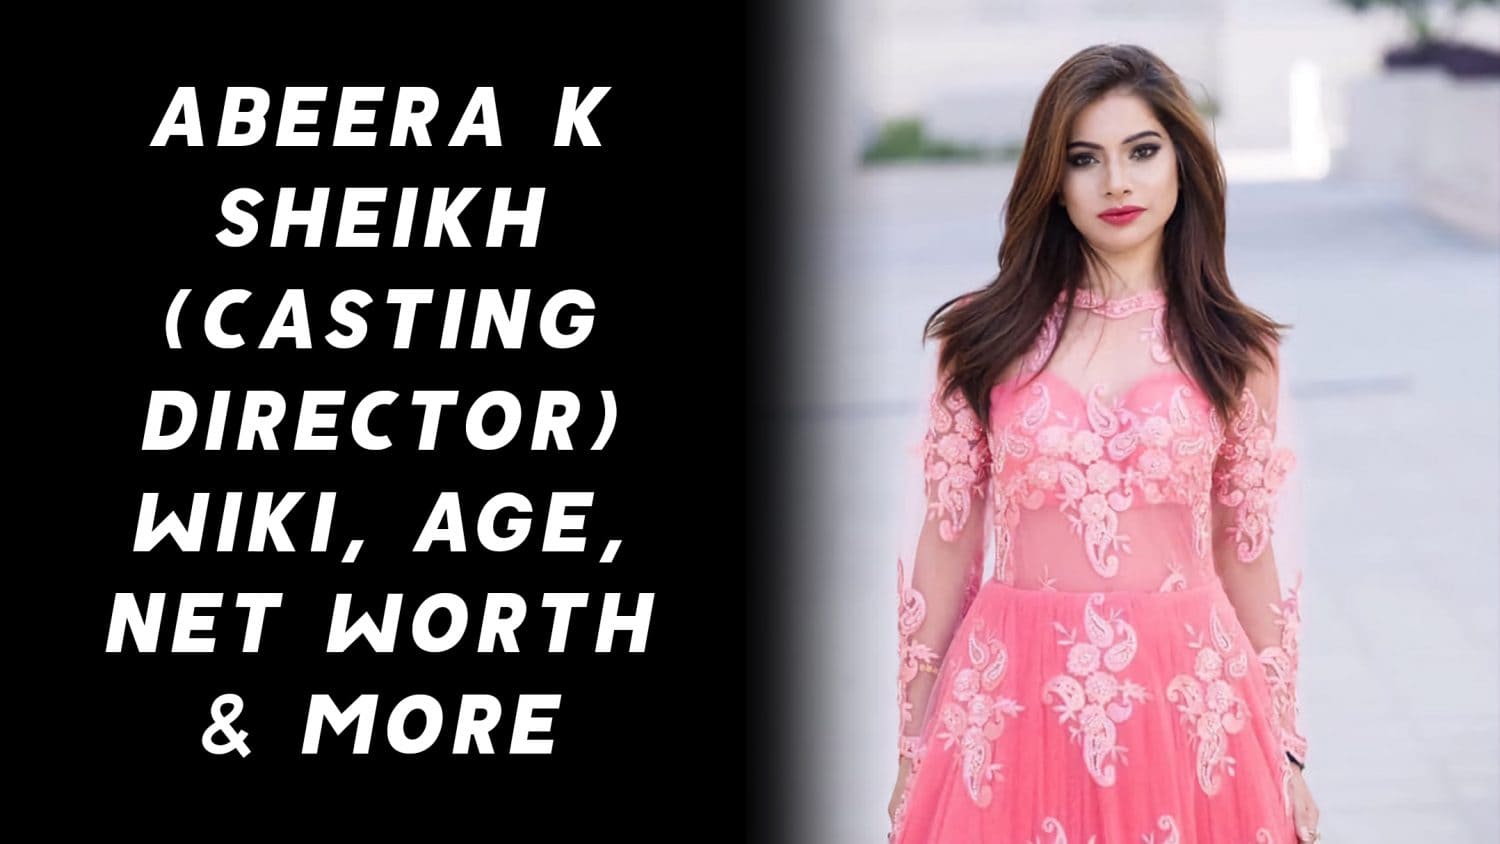 Abeera K Sheikh (Casting Director) Wiki, Age, Net Worth & More 1